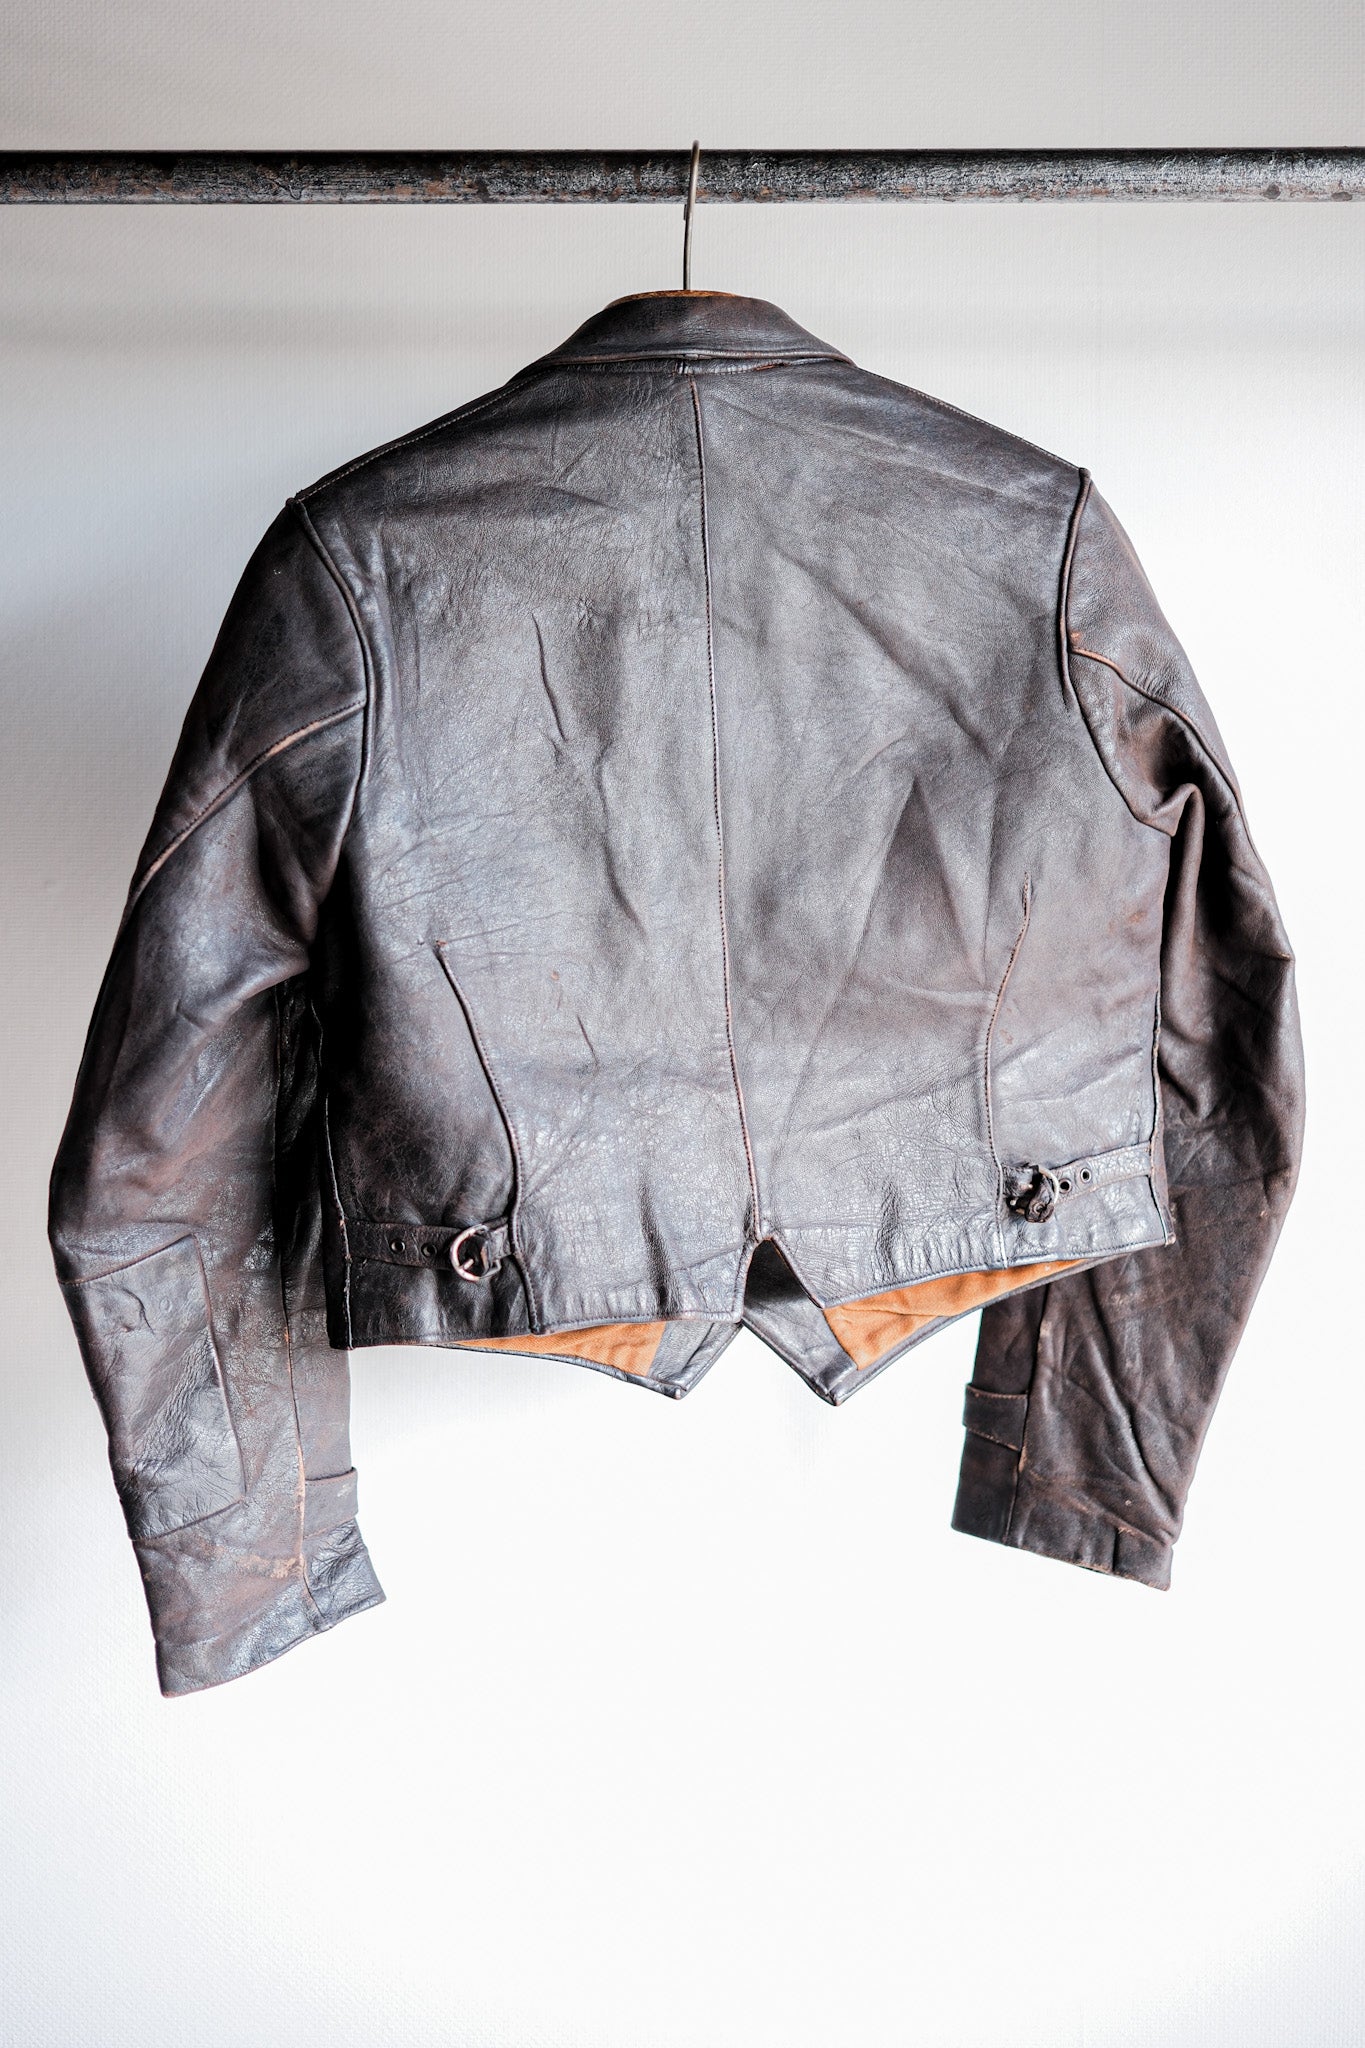 [〜40年代]德國復古雙胸摩托車皮夾克